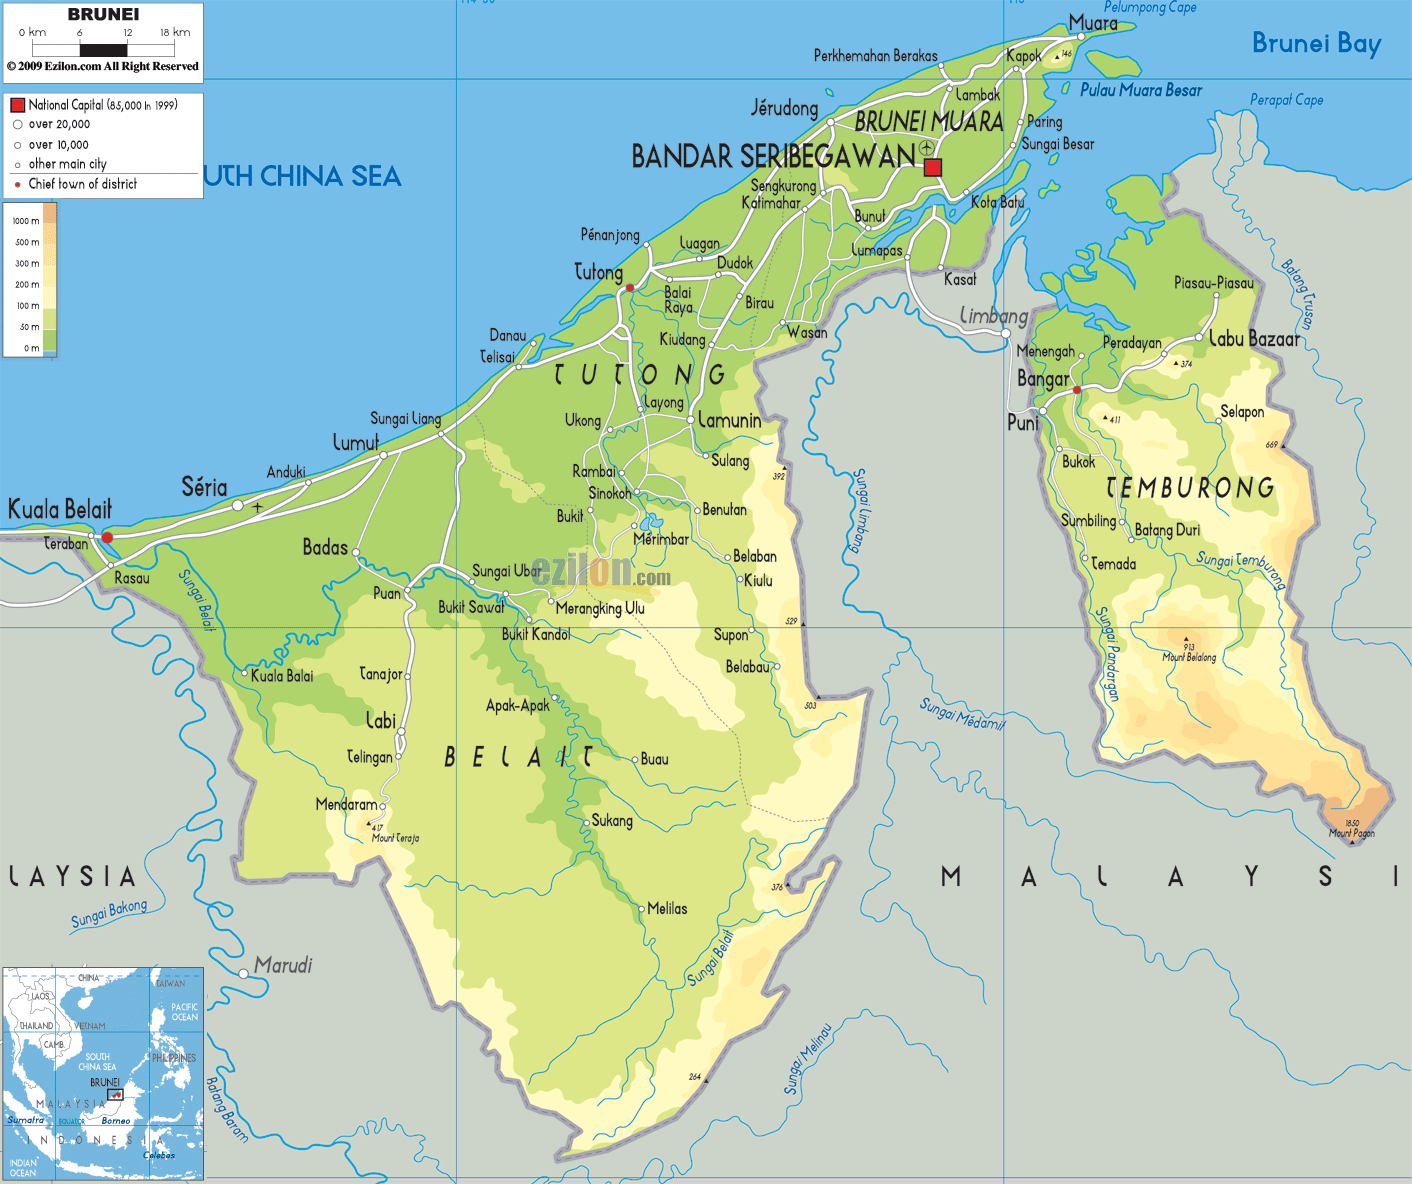 Brunei physikalisch karte